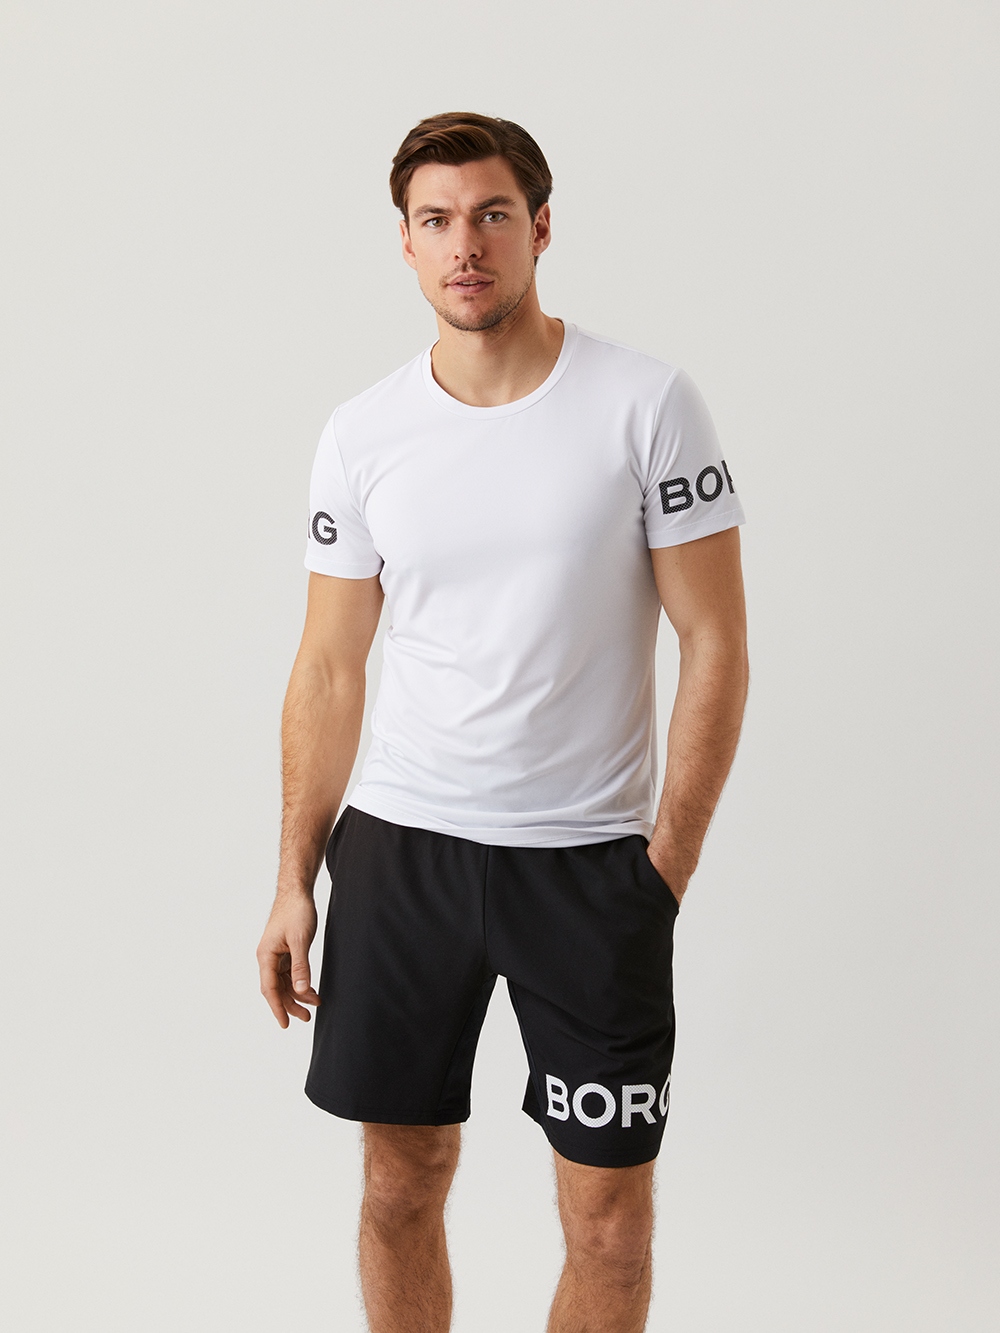 Björn Borg Short Sleeve Tee Shirt Men Herren Sport Freizeit T-Shirt 9999-1140 